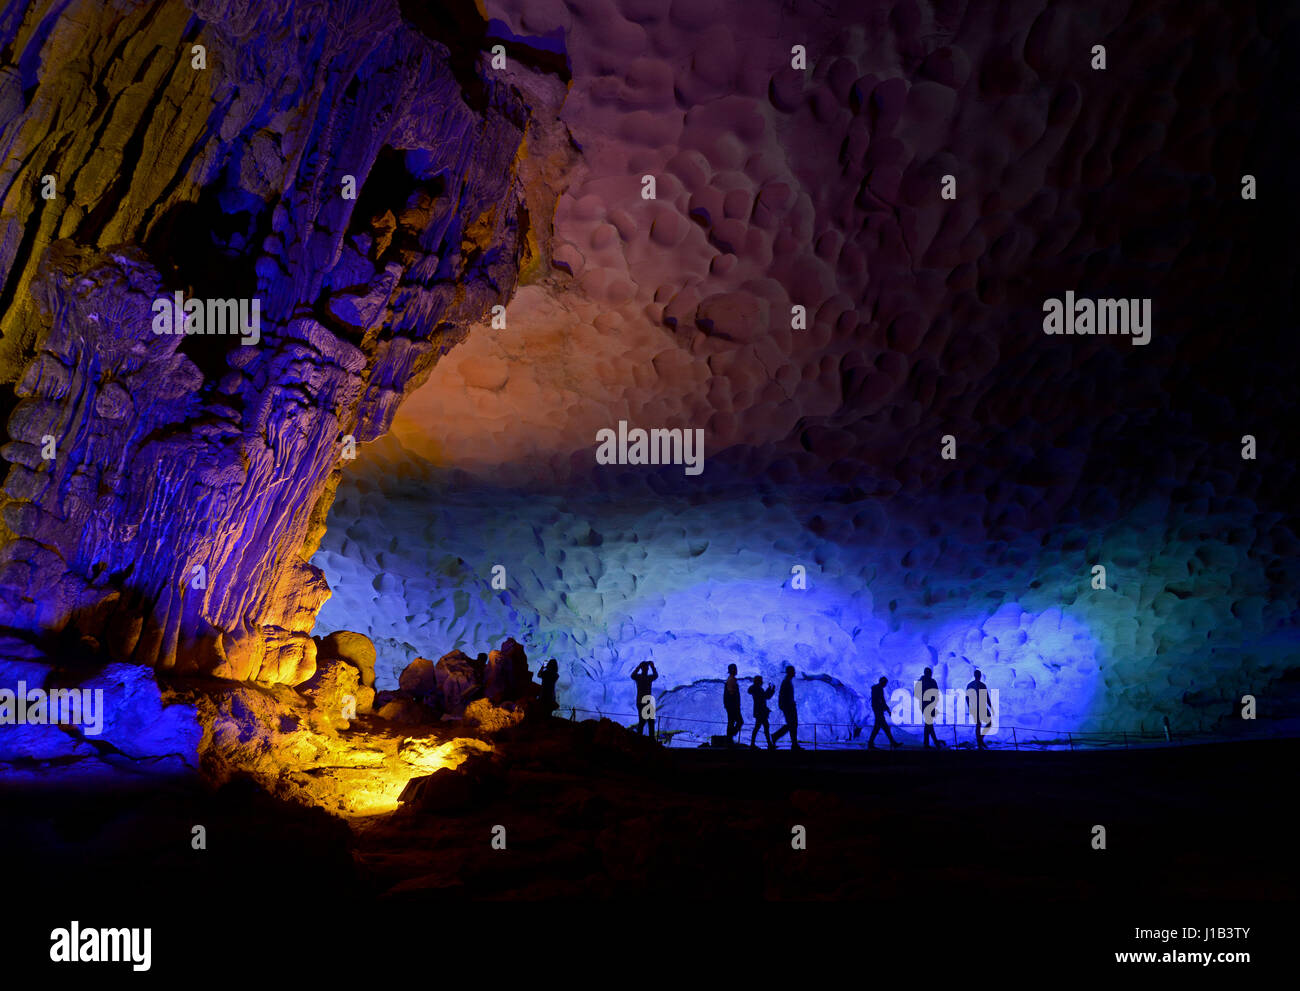 La Silhouette de touristes se rendant sur les Grottes Sung Sot (Grotte étonnant) sur l'Île Bo député dans la baie d'Halong, Vietnam, qui est un UNESCO World Heritage Site. Banque D'Images